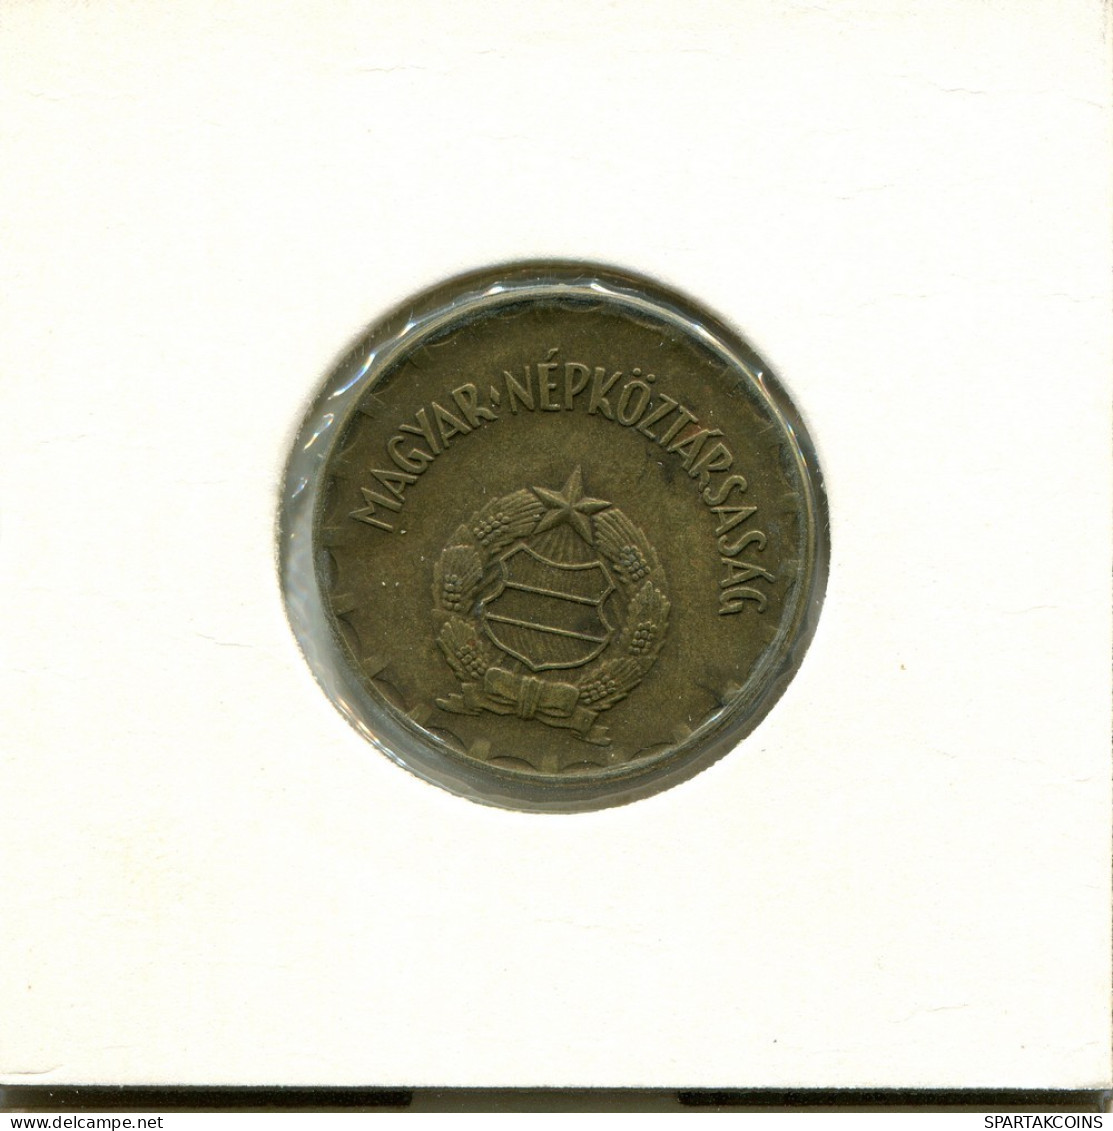 2 FORINT 1978 HUNGRÍA HUNGARY Moneda #AS859.E.A - Hongrie